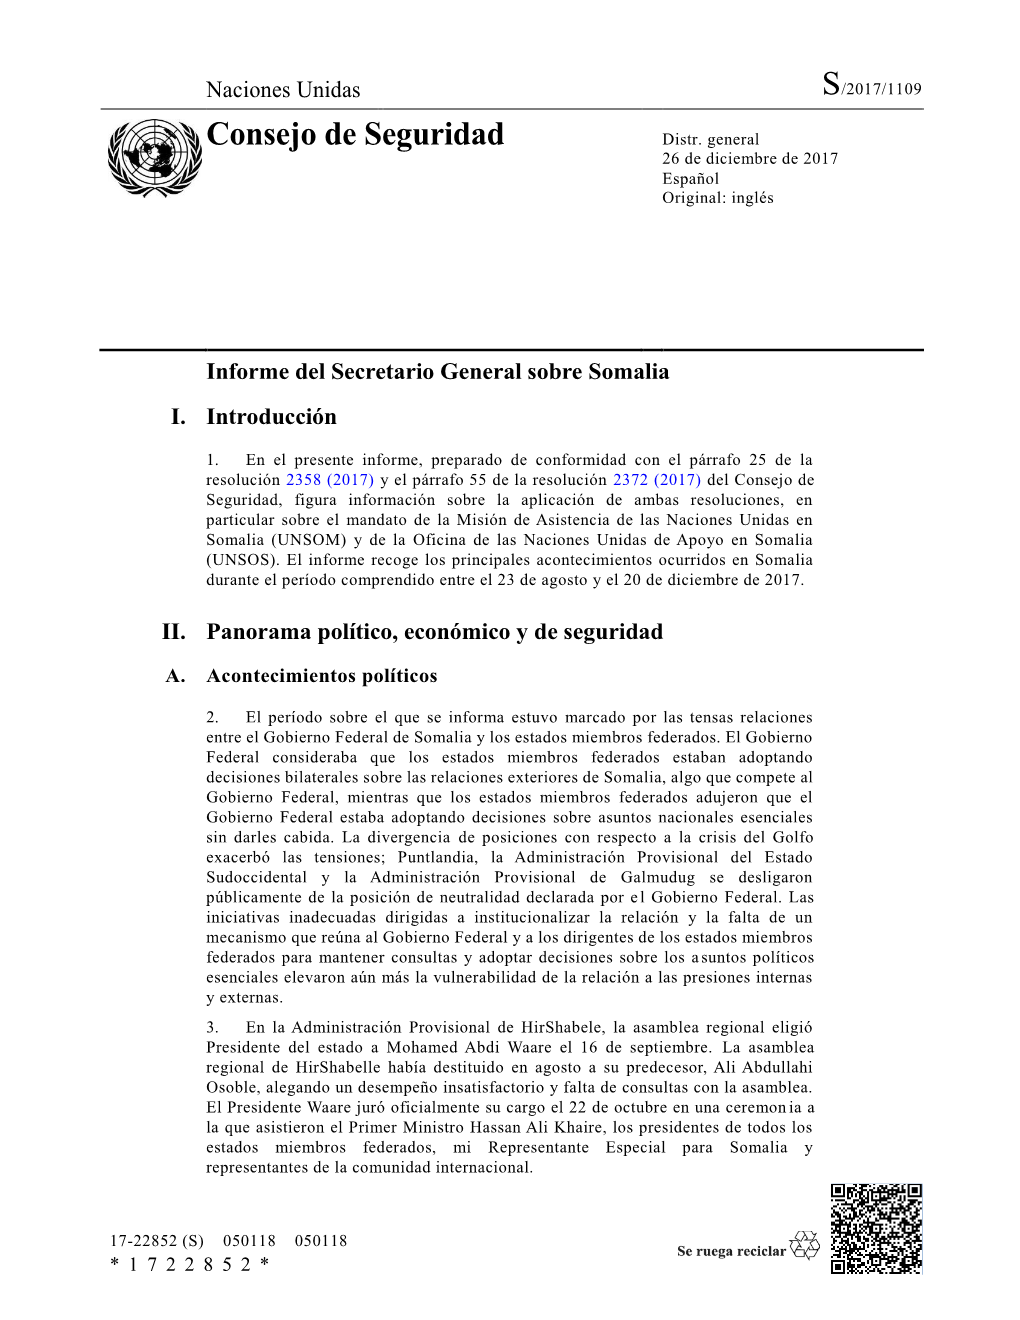 Informe Del Secretario General Sobre Somalia